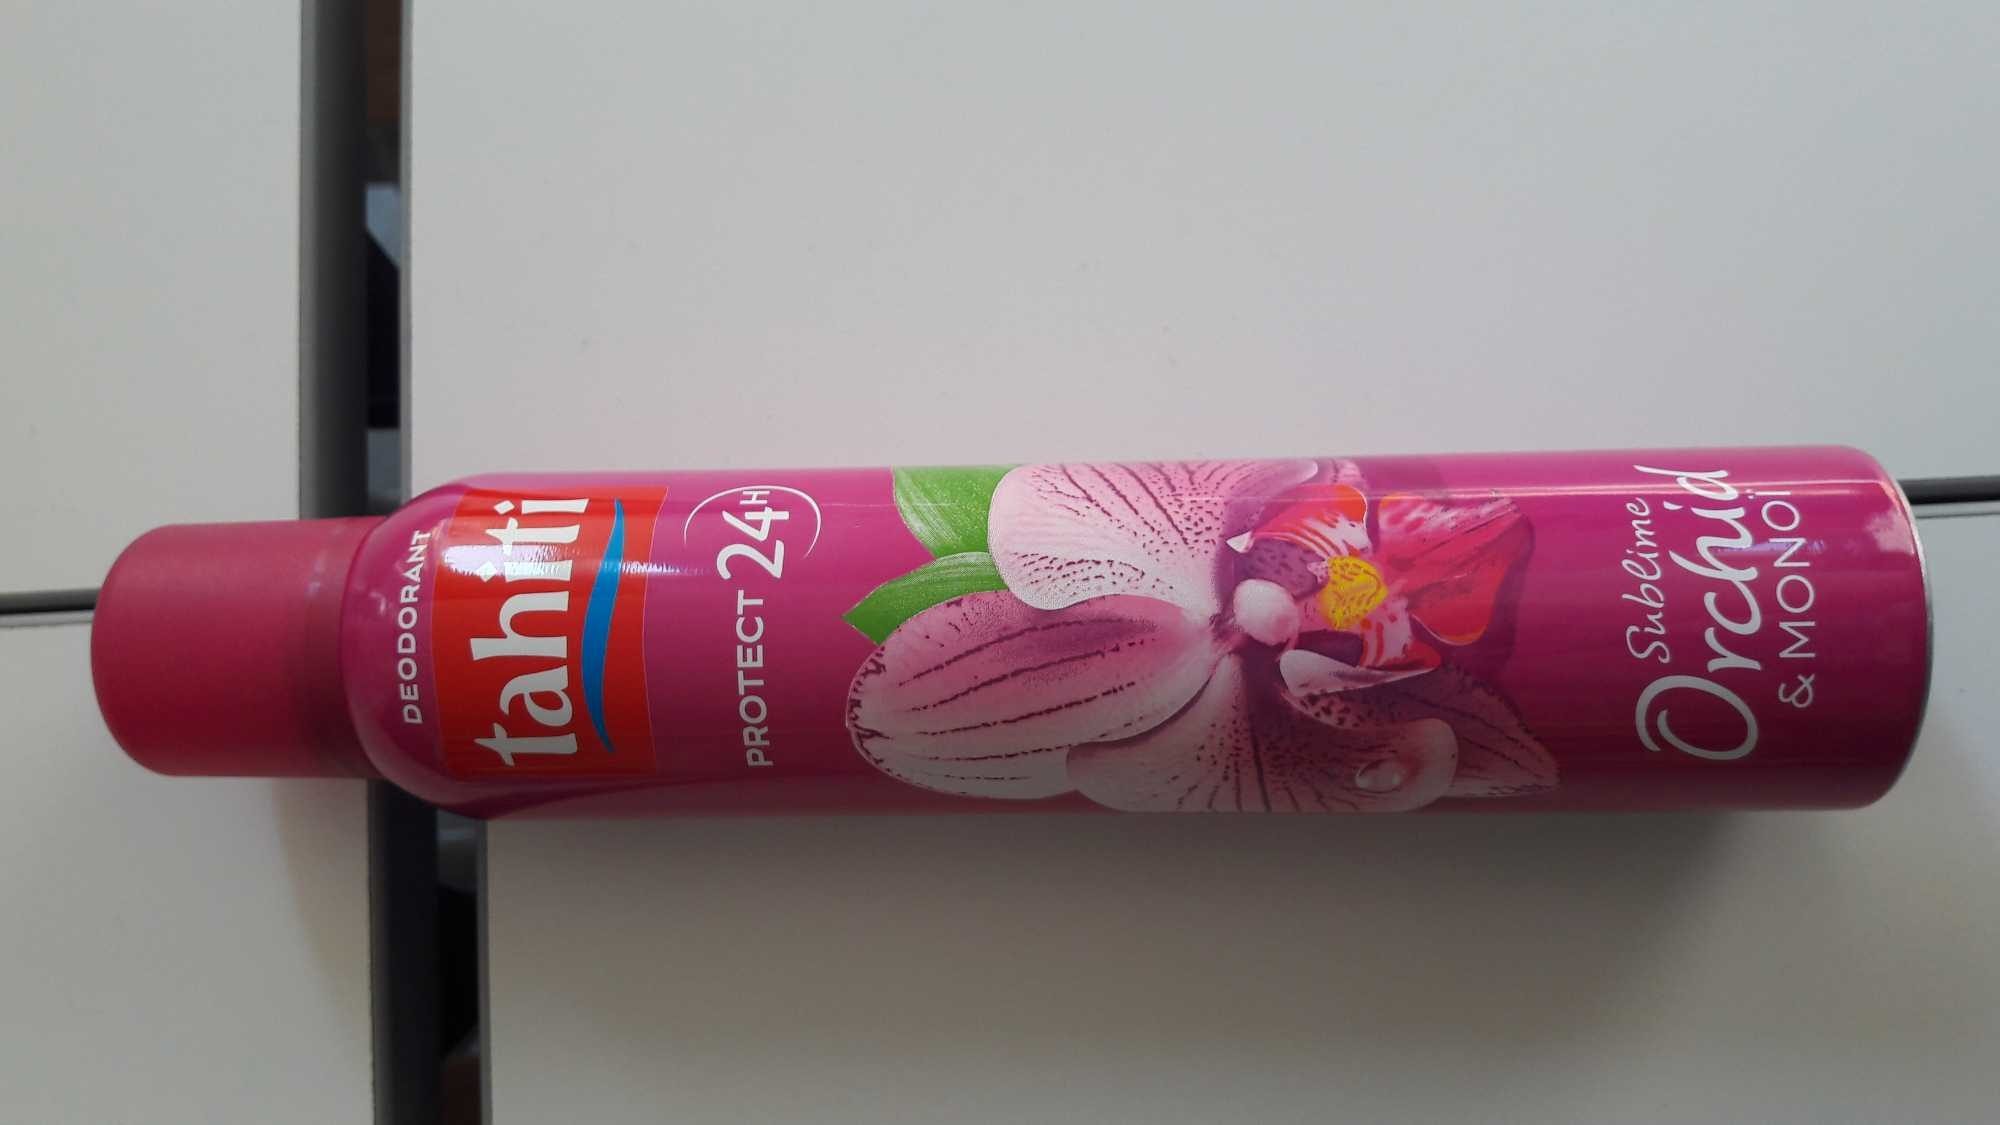 Déodorant Tahiti Sublime Orchidée & Monoï - Product - fr